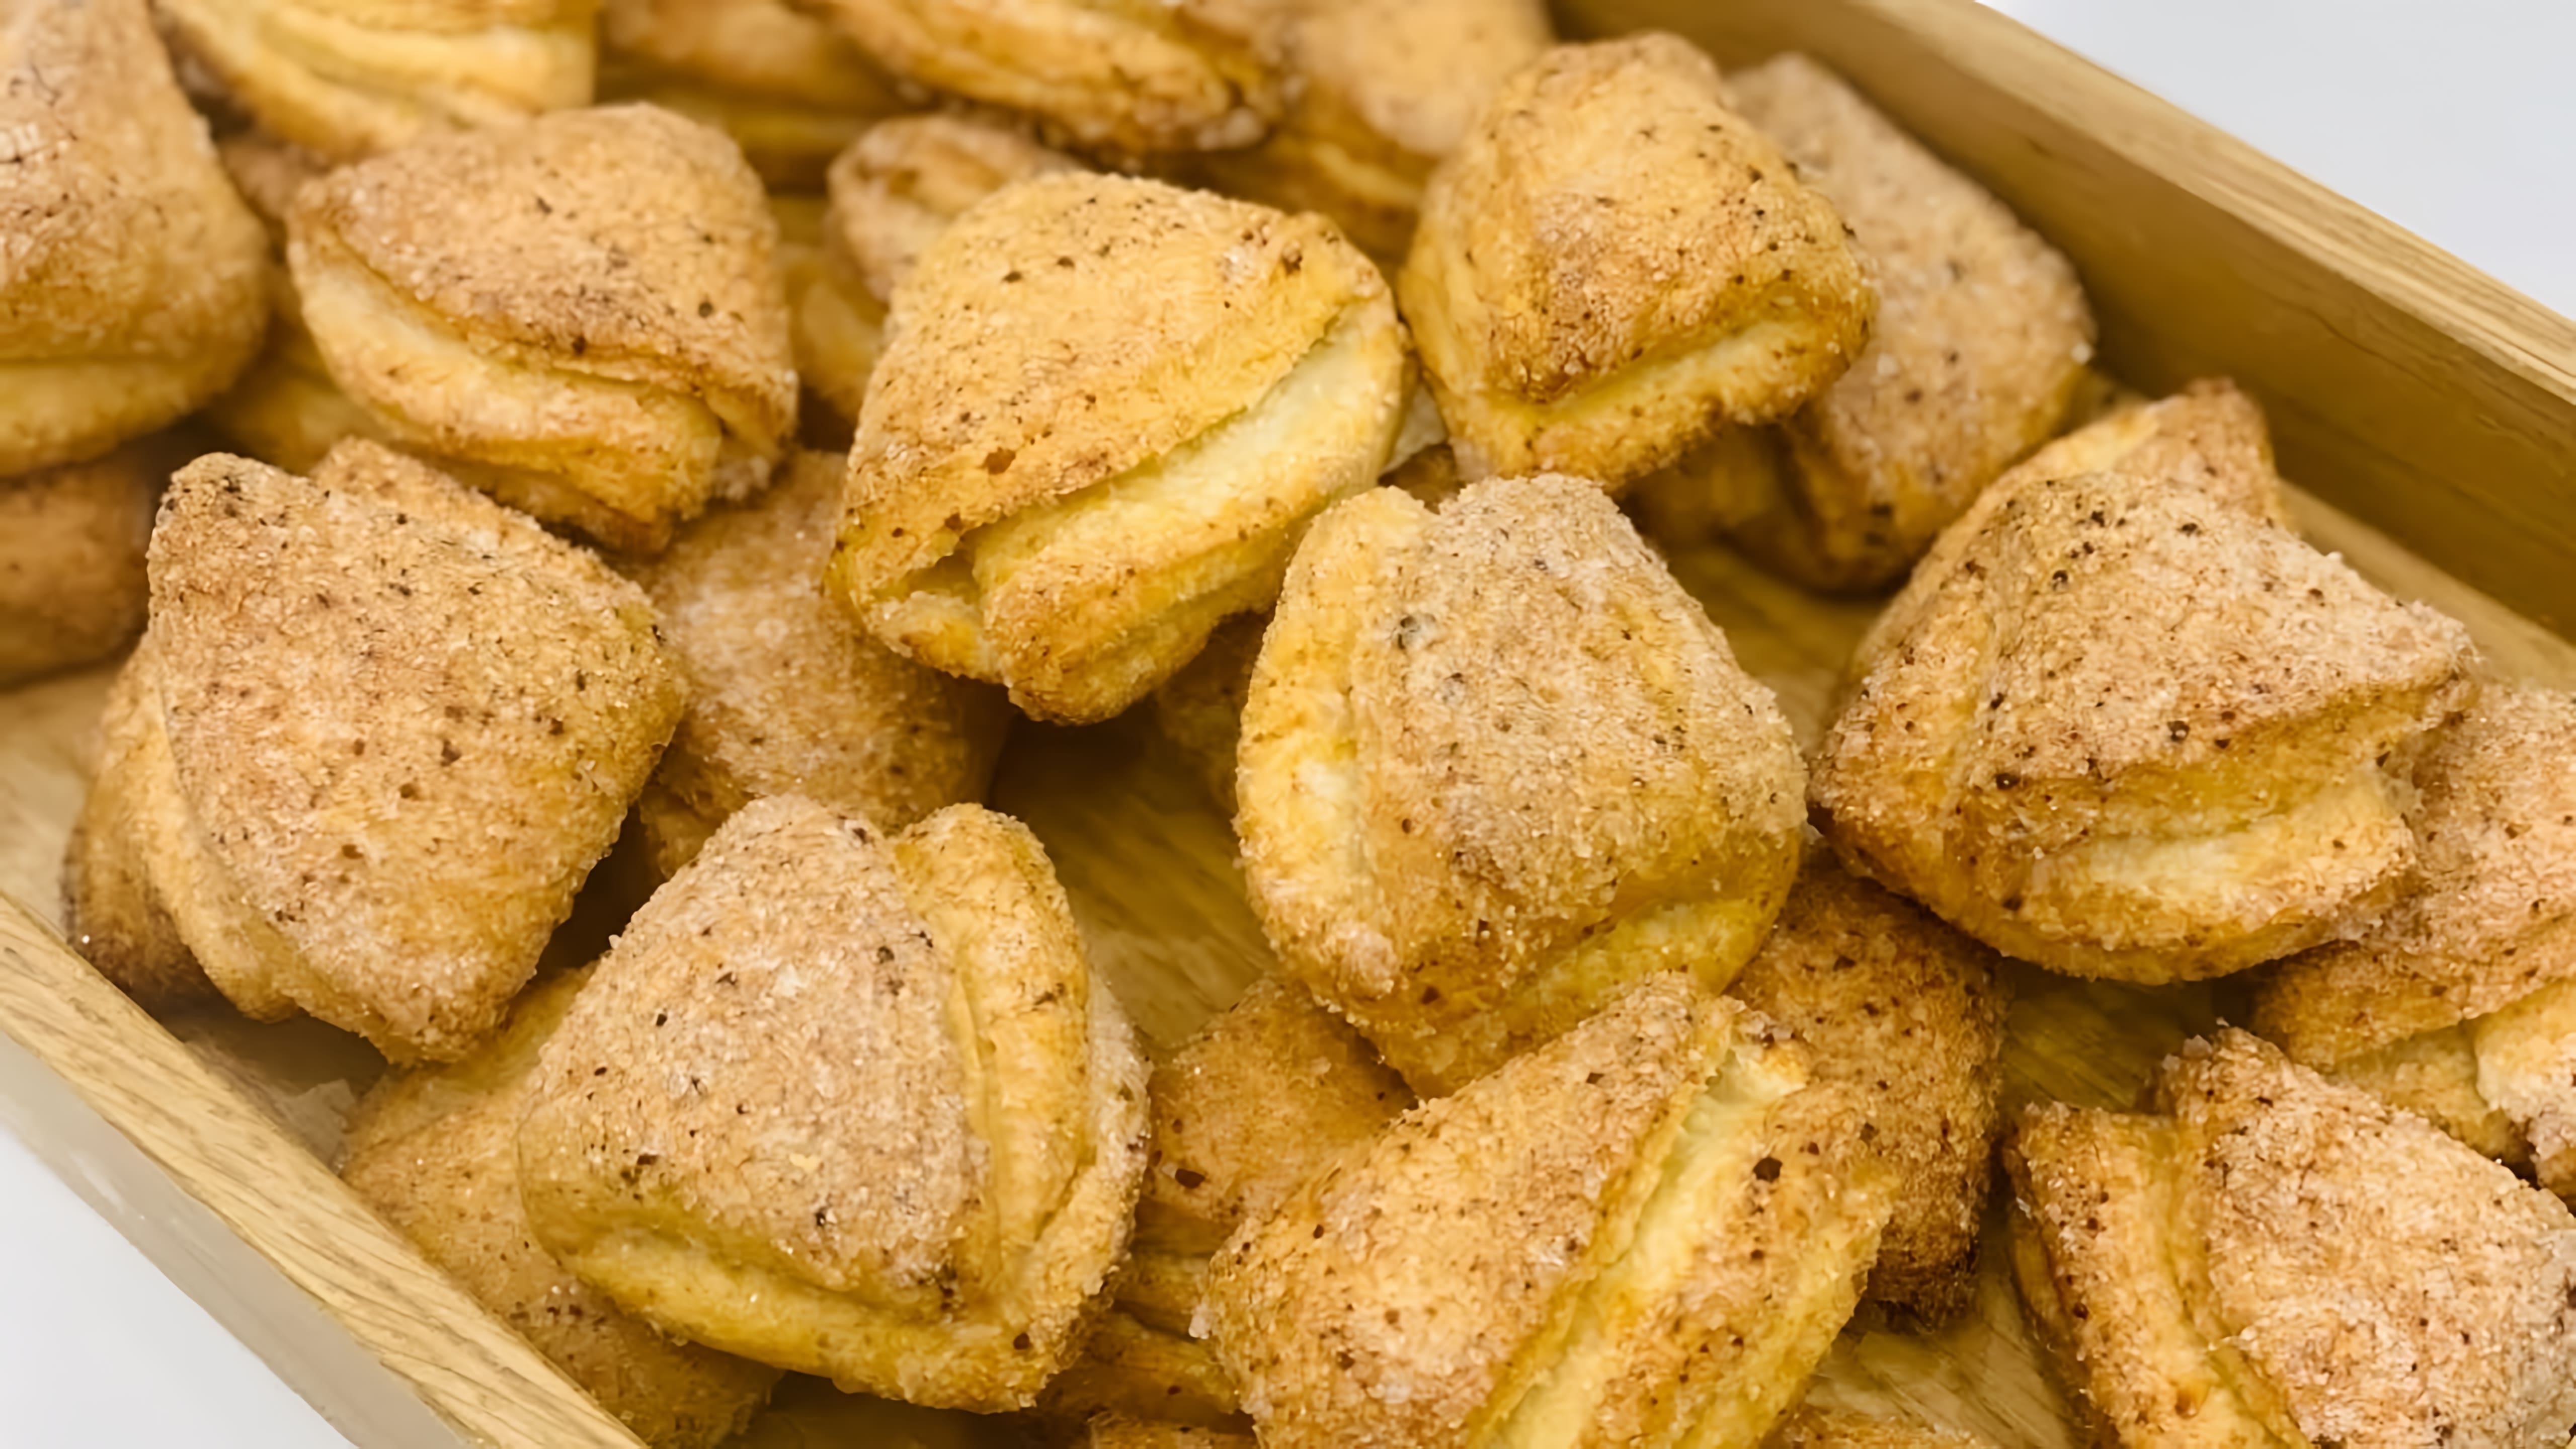 "Печенье Гусиные лапки" - это видео-ролик, который демонстрирует процесс приготовления вкусного и популярного печенья